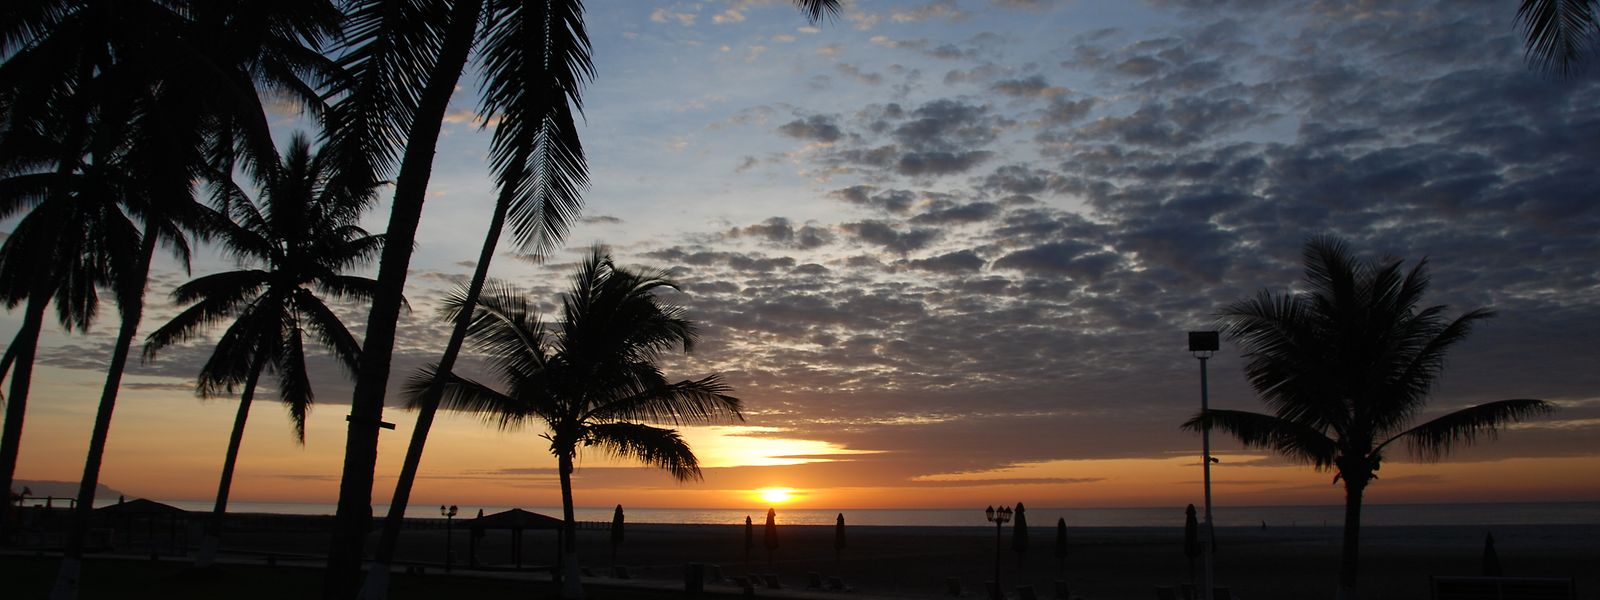 Der Sonnenaufgang am Strand bei Salalah taucht den Himmel und die Landschaft in atemberaubende Farben. 
